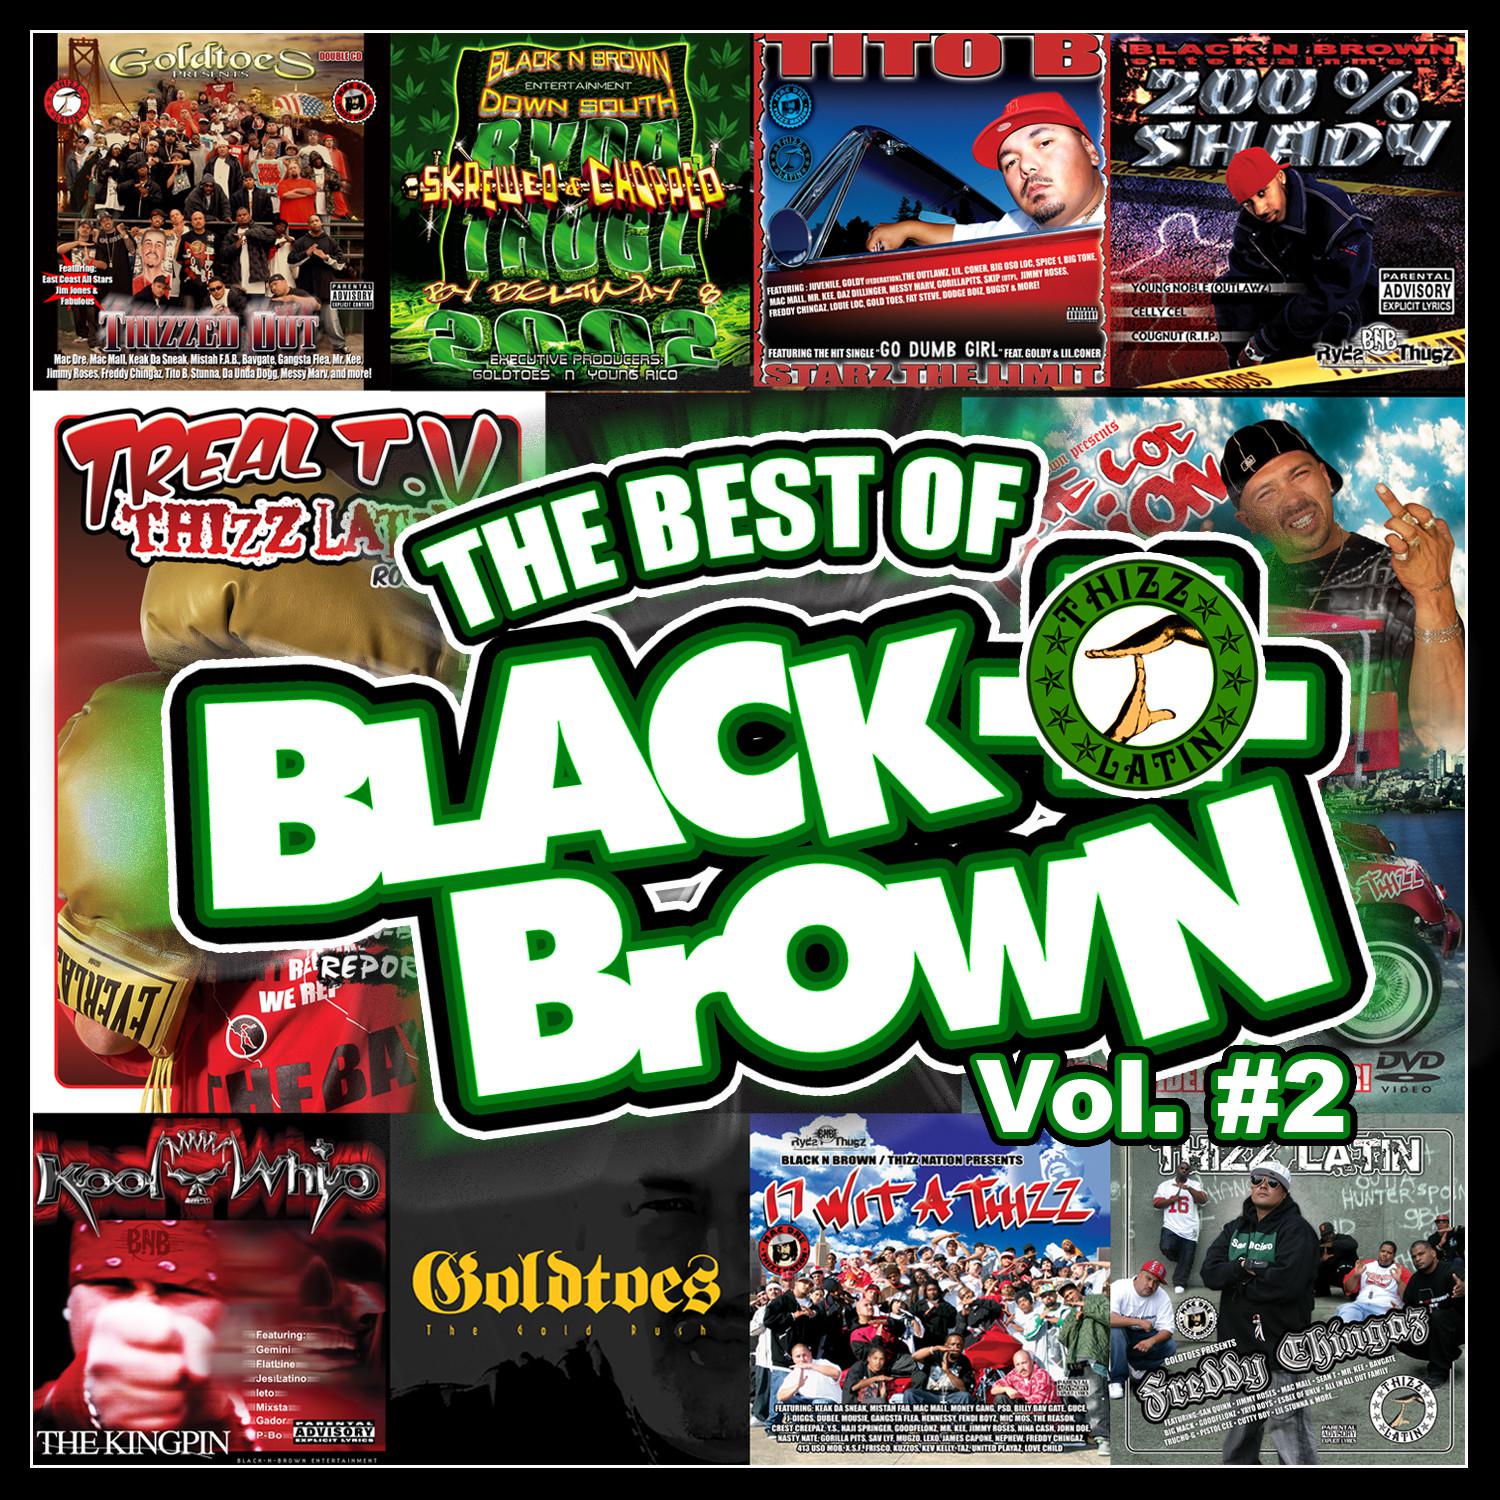 Goldtoes Presents: The Best of Black-N-Brown, Vol. 2